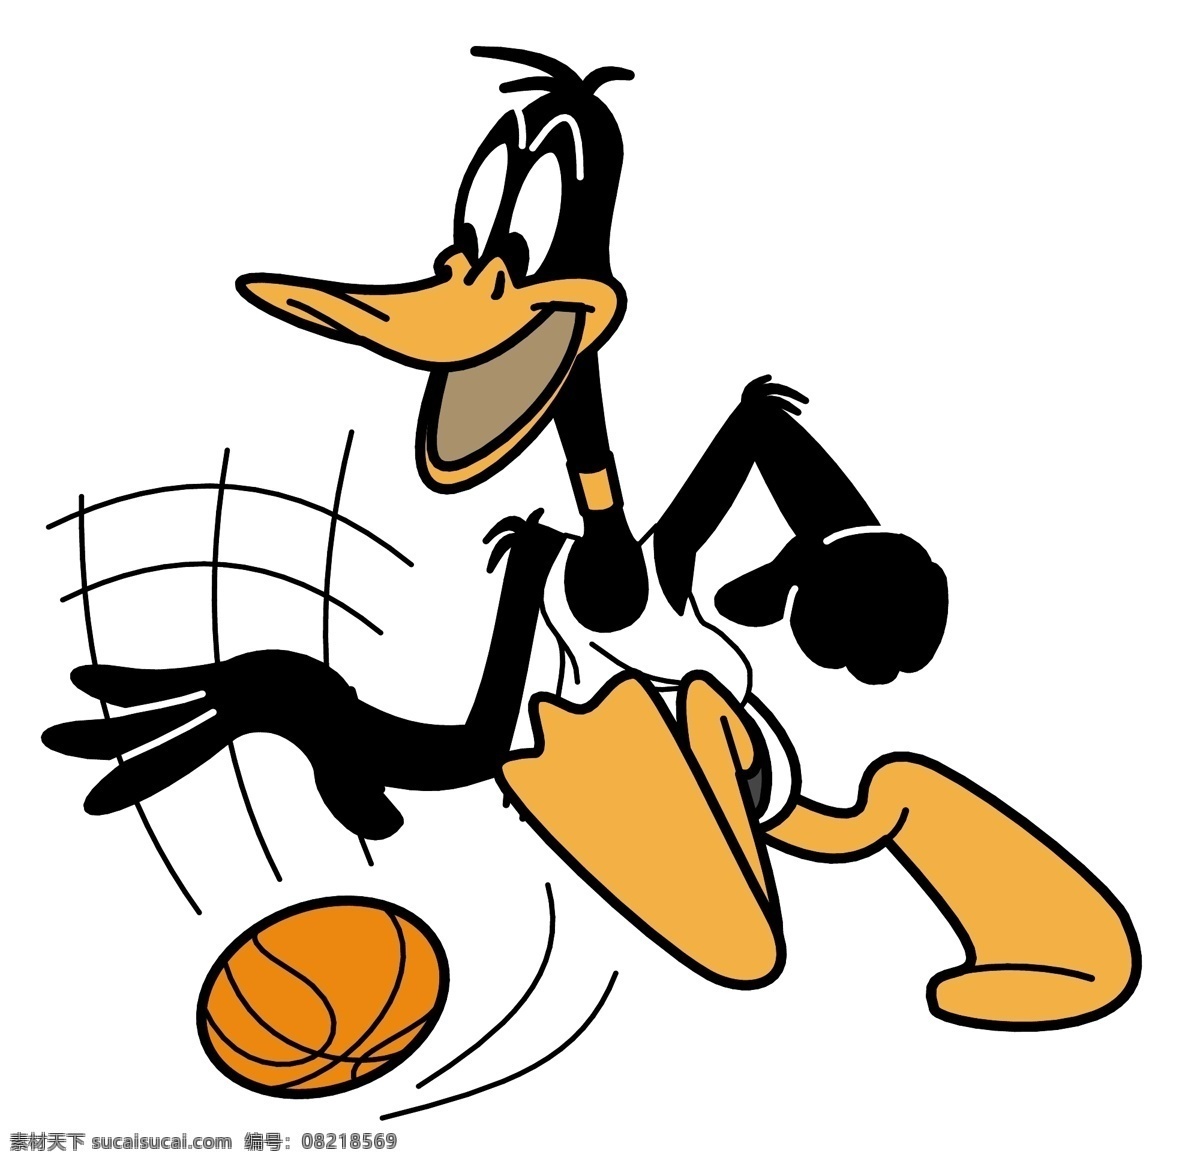 打球的唐老鸭 打球 唐老鸭 篮球 比赛 动画 卡通 动物 鸭子 白色